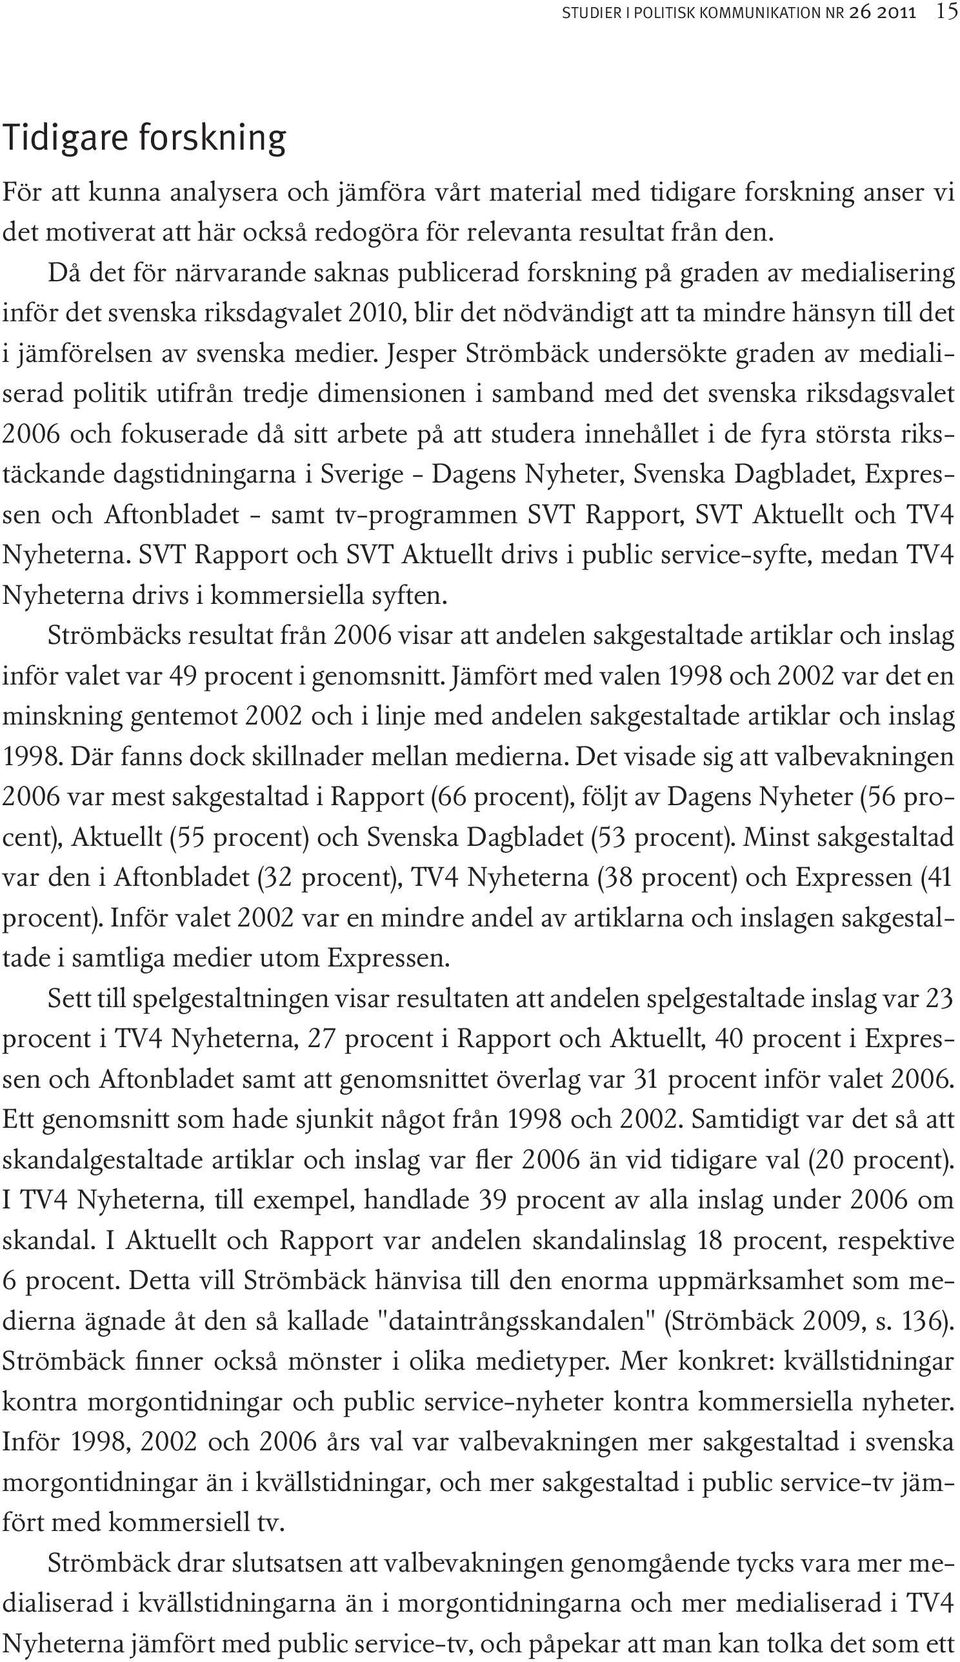 Då det för närvarande saknas publicerad forskning på graden av medialisering inför det svenska riksdagvalet 2010, blir det nödvändigt att ta mindre hänsyn till det i jämförelsen av svenska medier.